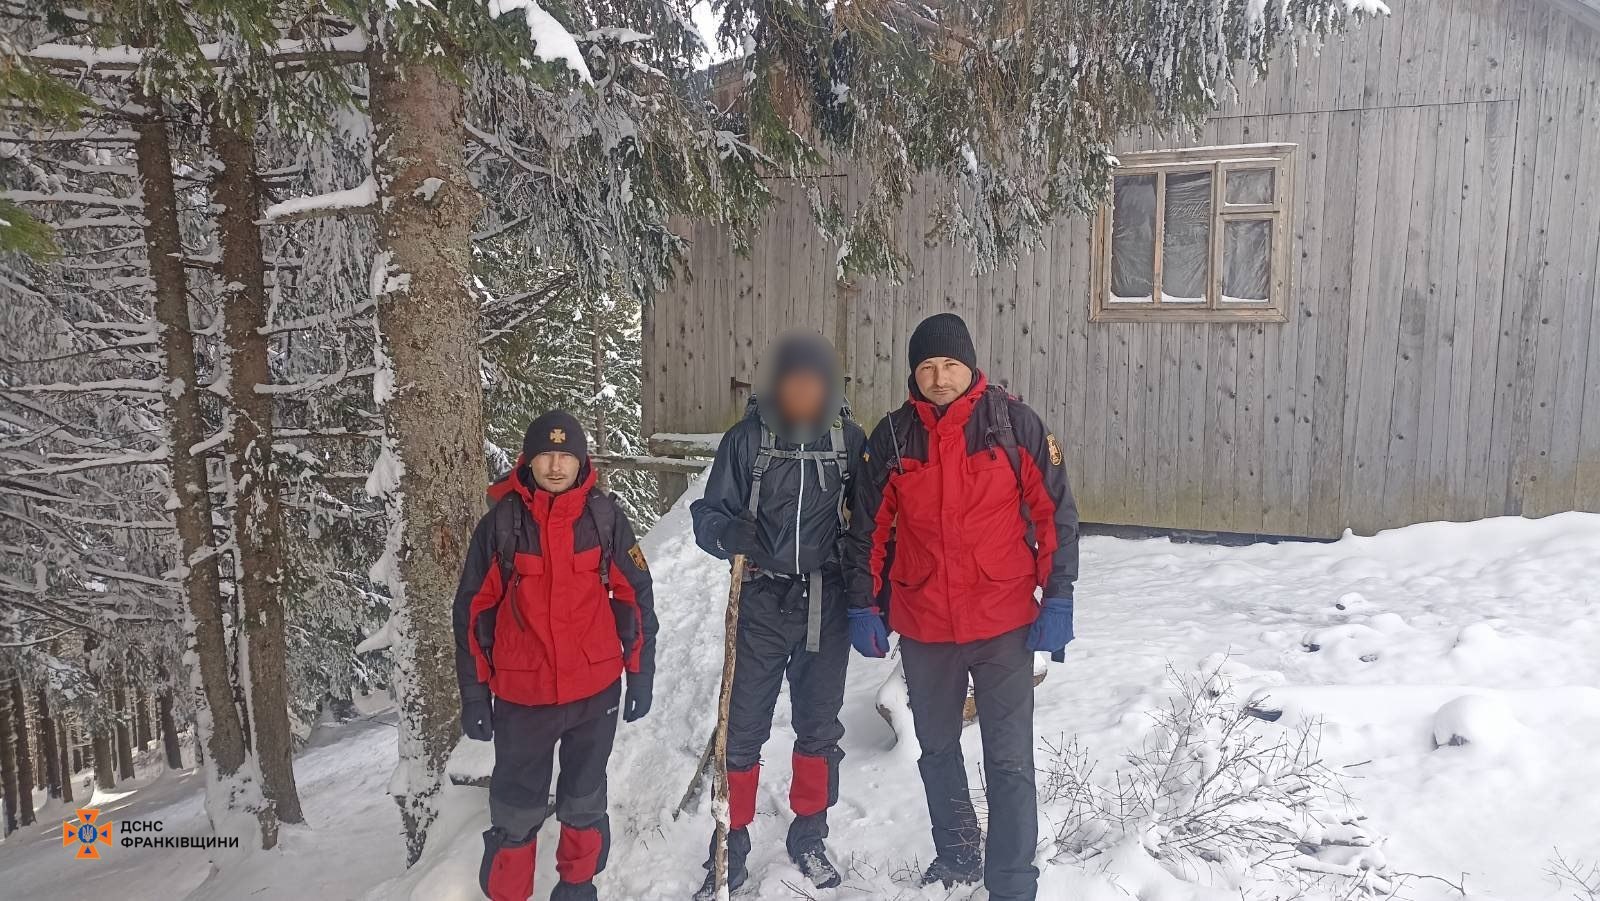 Прикарпатські рятувальники допомогли туристу, який не міг самостійно спуститися з гір